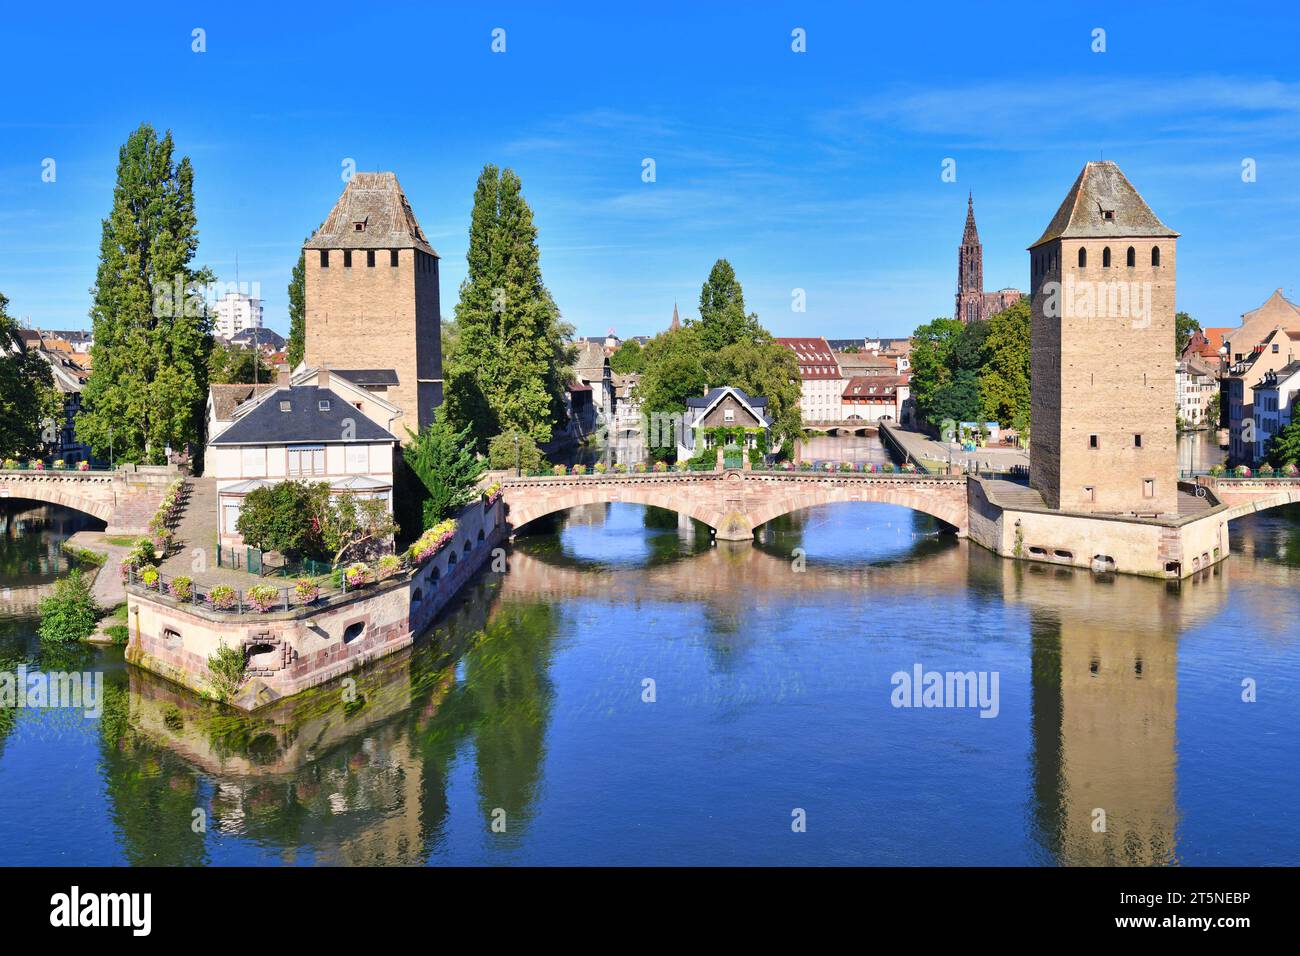 Strasbourg, France : Tour historique du pont des ponts couverts dans le cadre des travaux défensifs érigés au 13e siècle sur la rivière Ill dans la petite Franc Banque D'Images